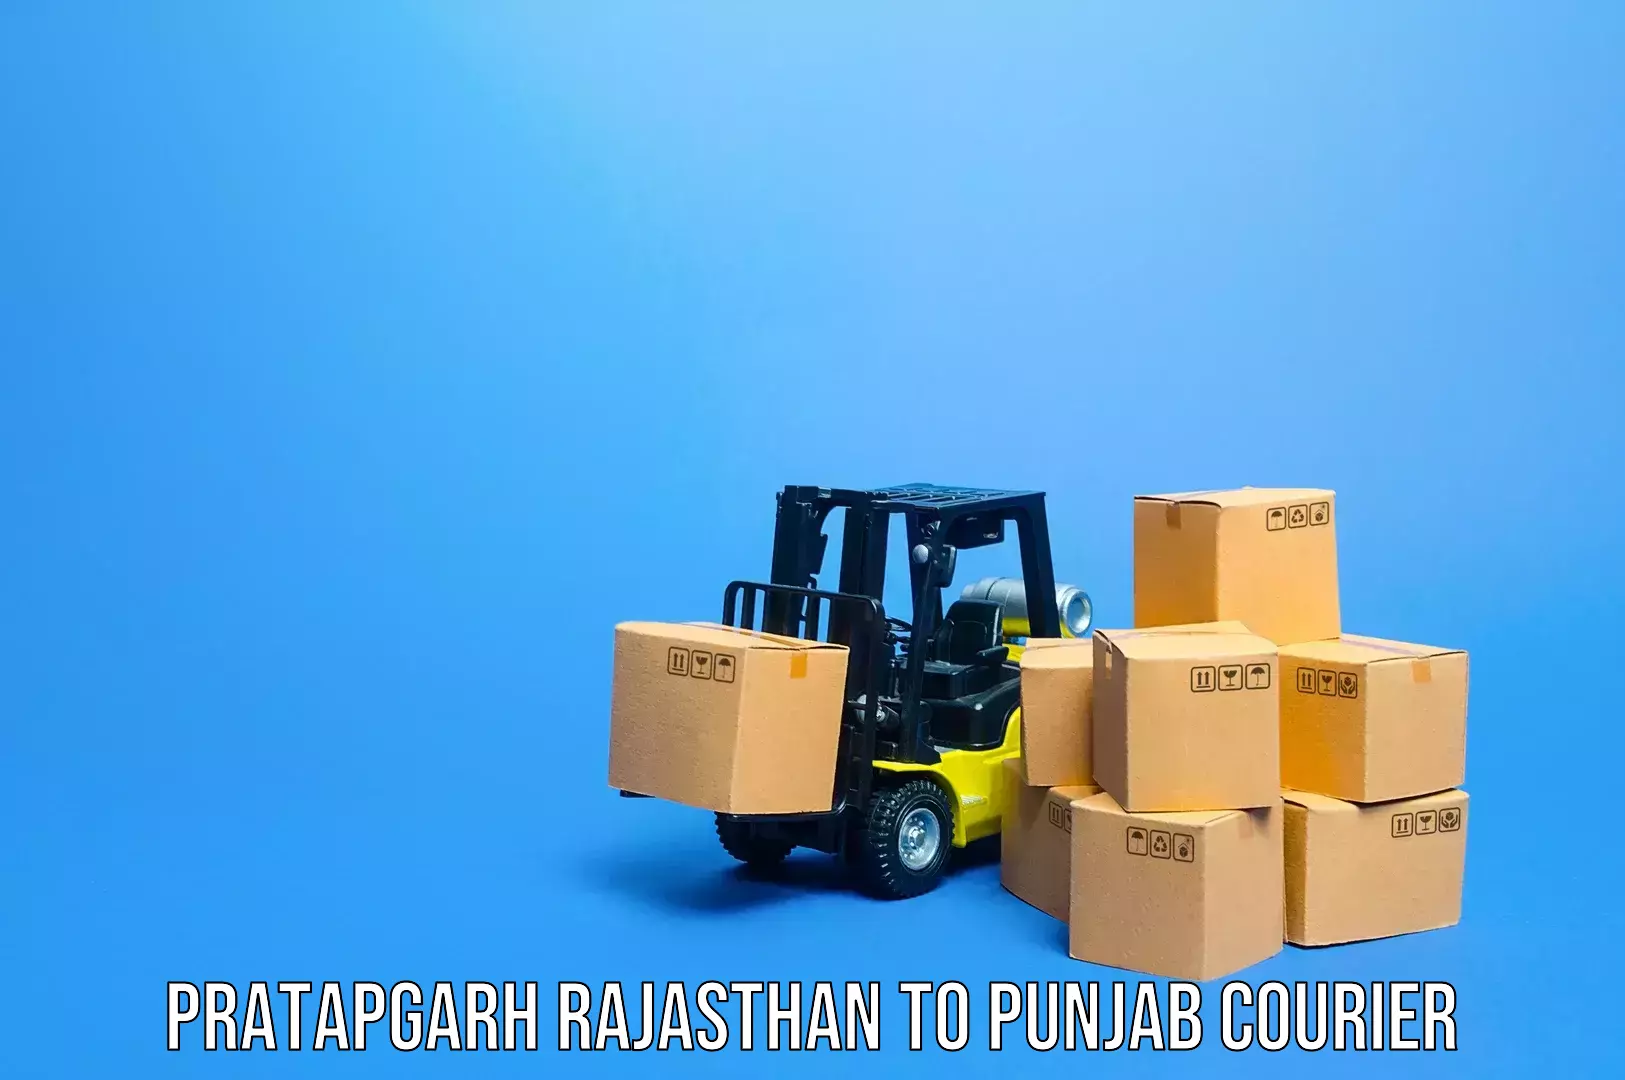 Luggage transfer service Pratapgarh Rajasthan to Punjab